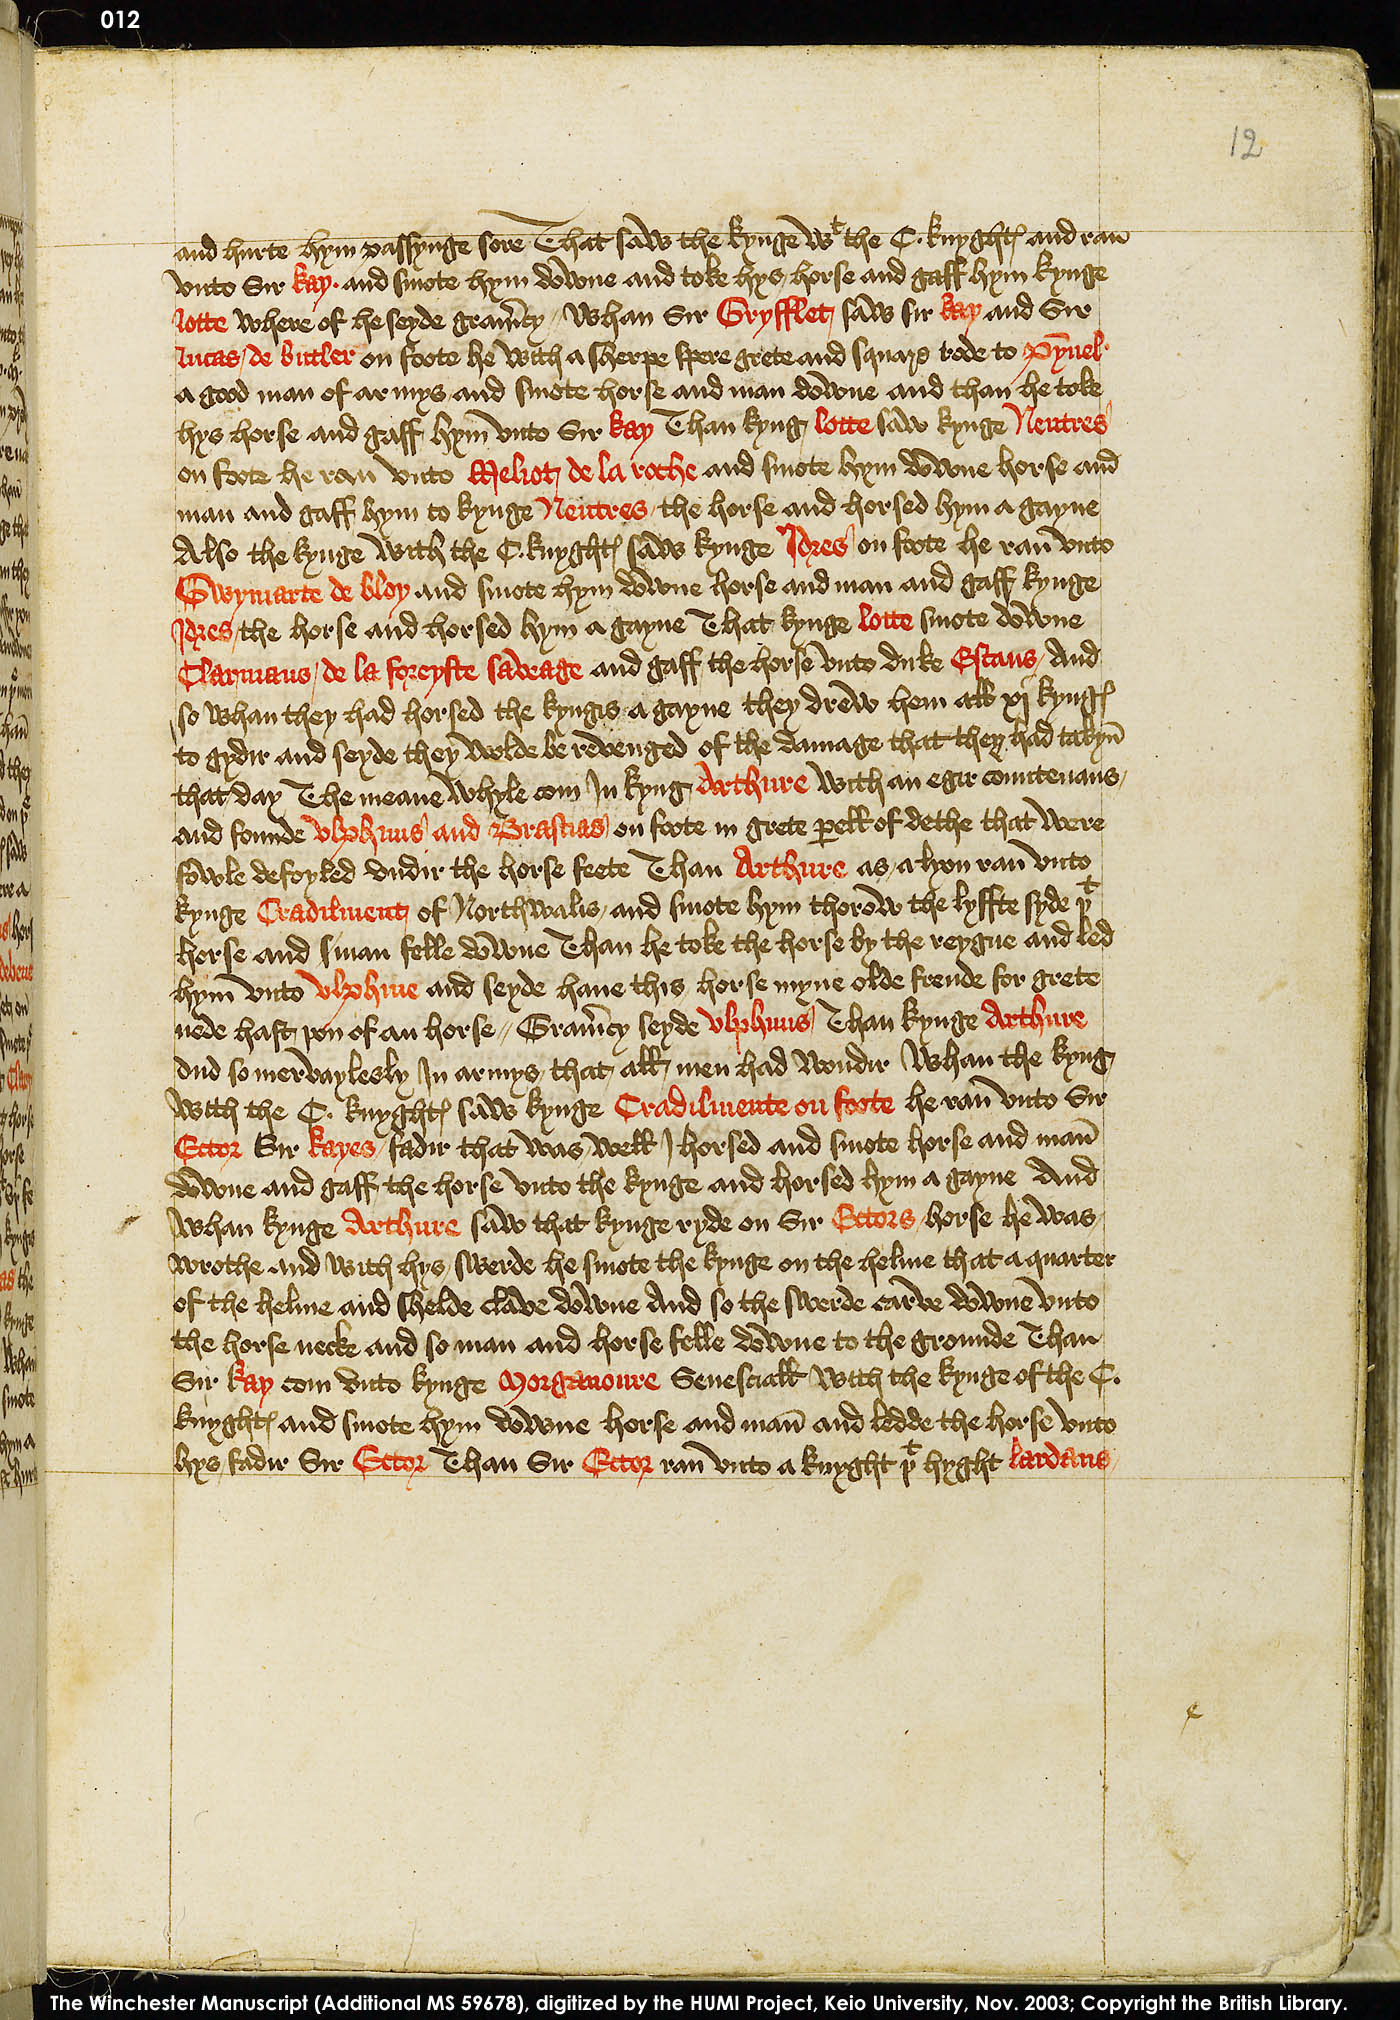 Folio 12r